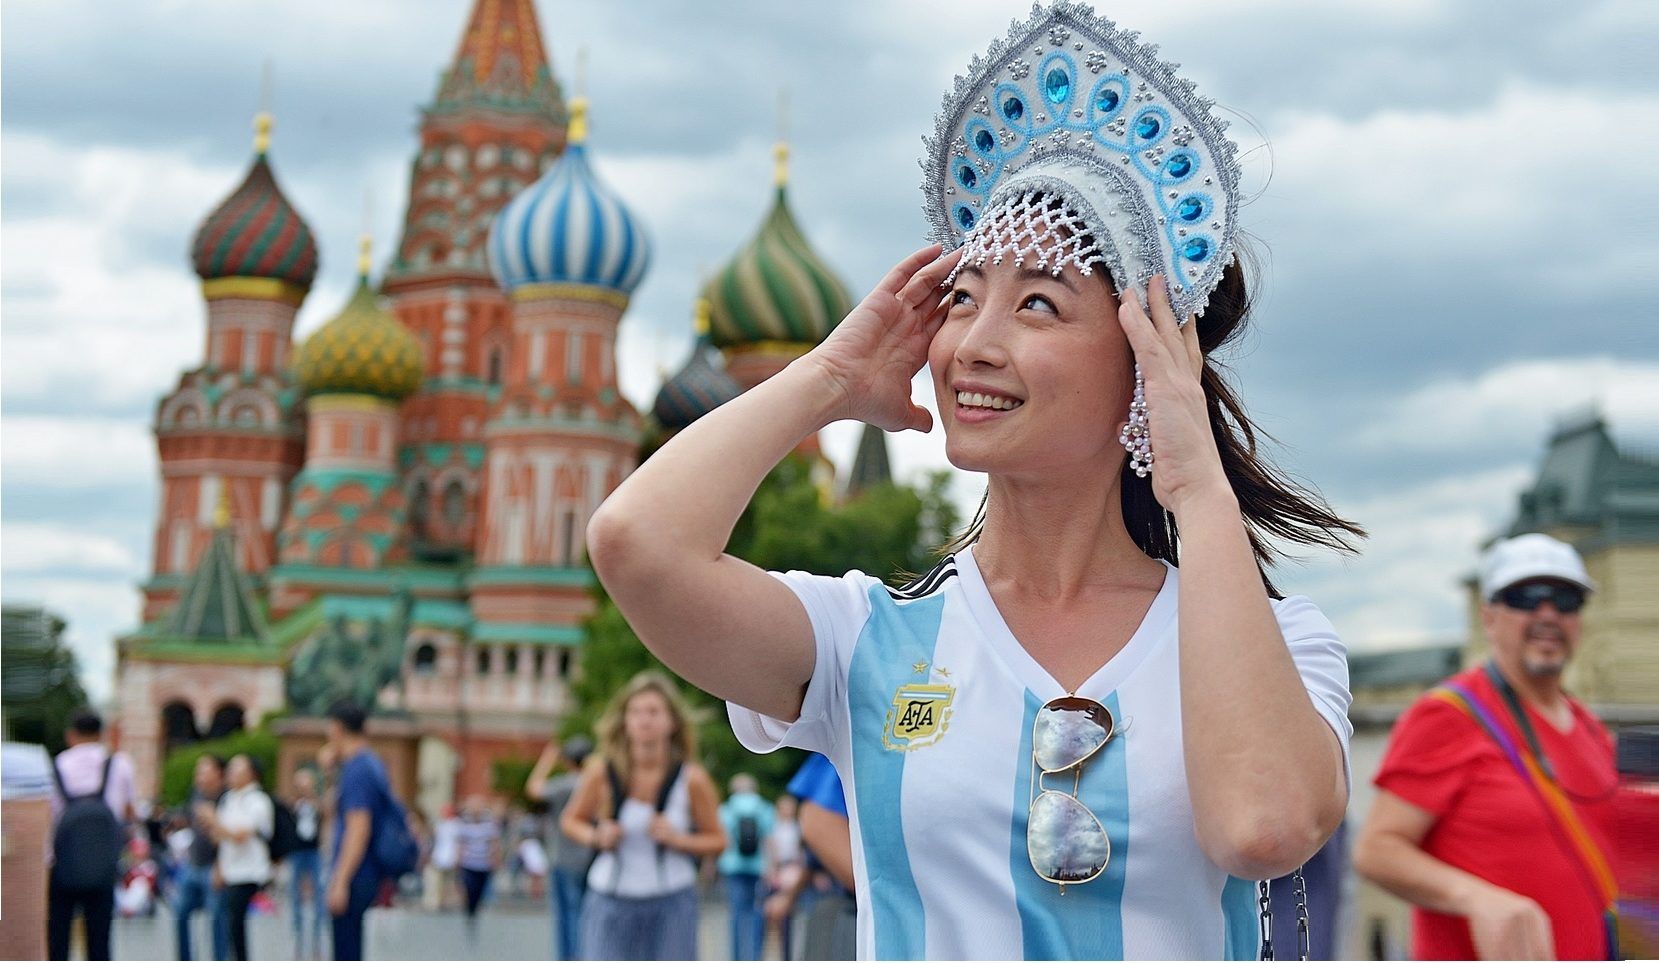 Иностранные туристы в Москве